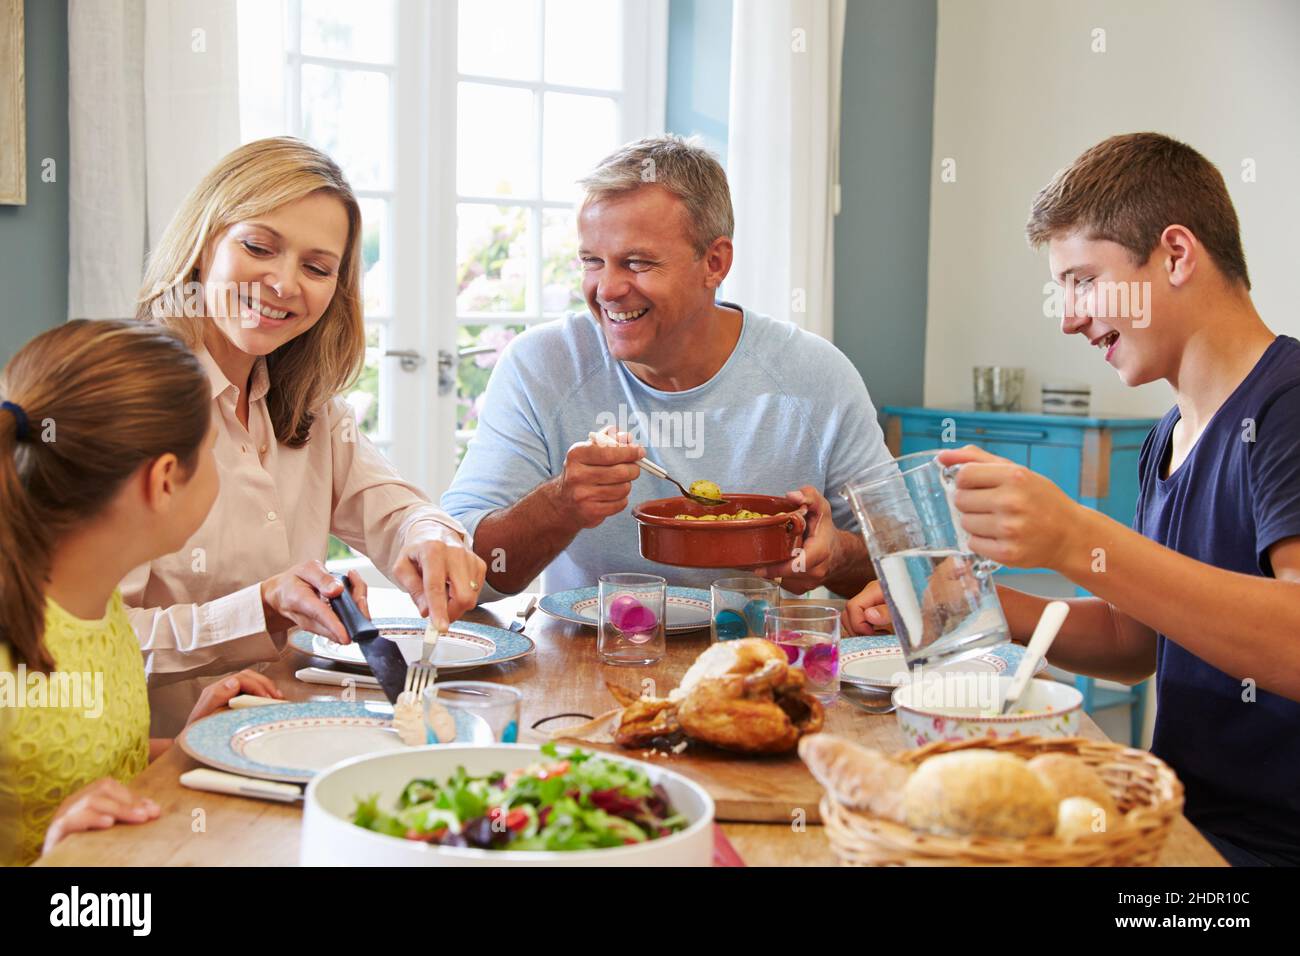 Amuse, Familie, Mittagessen, Amuses, Familien, Mittagspause Stockfoto